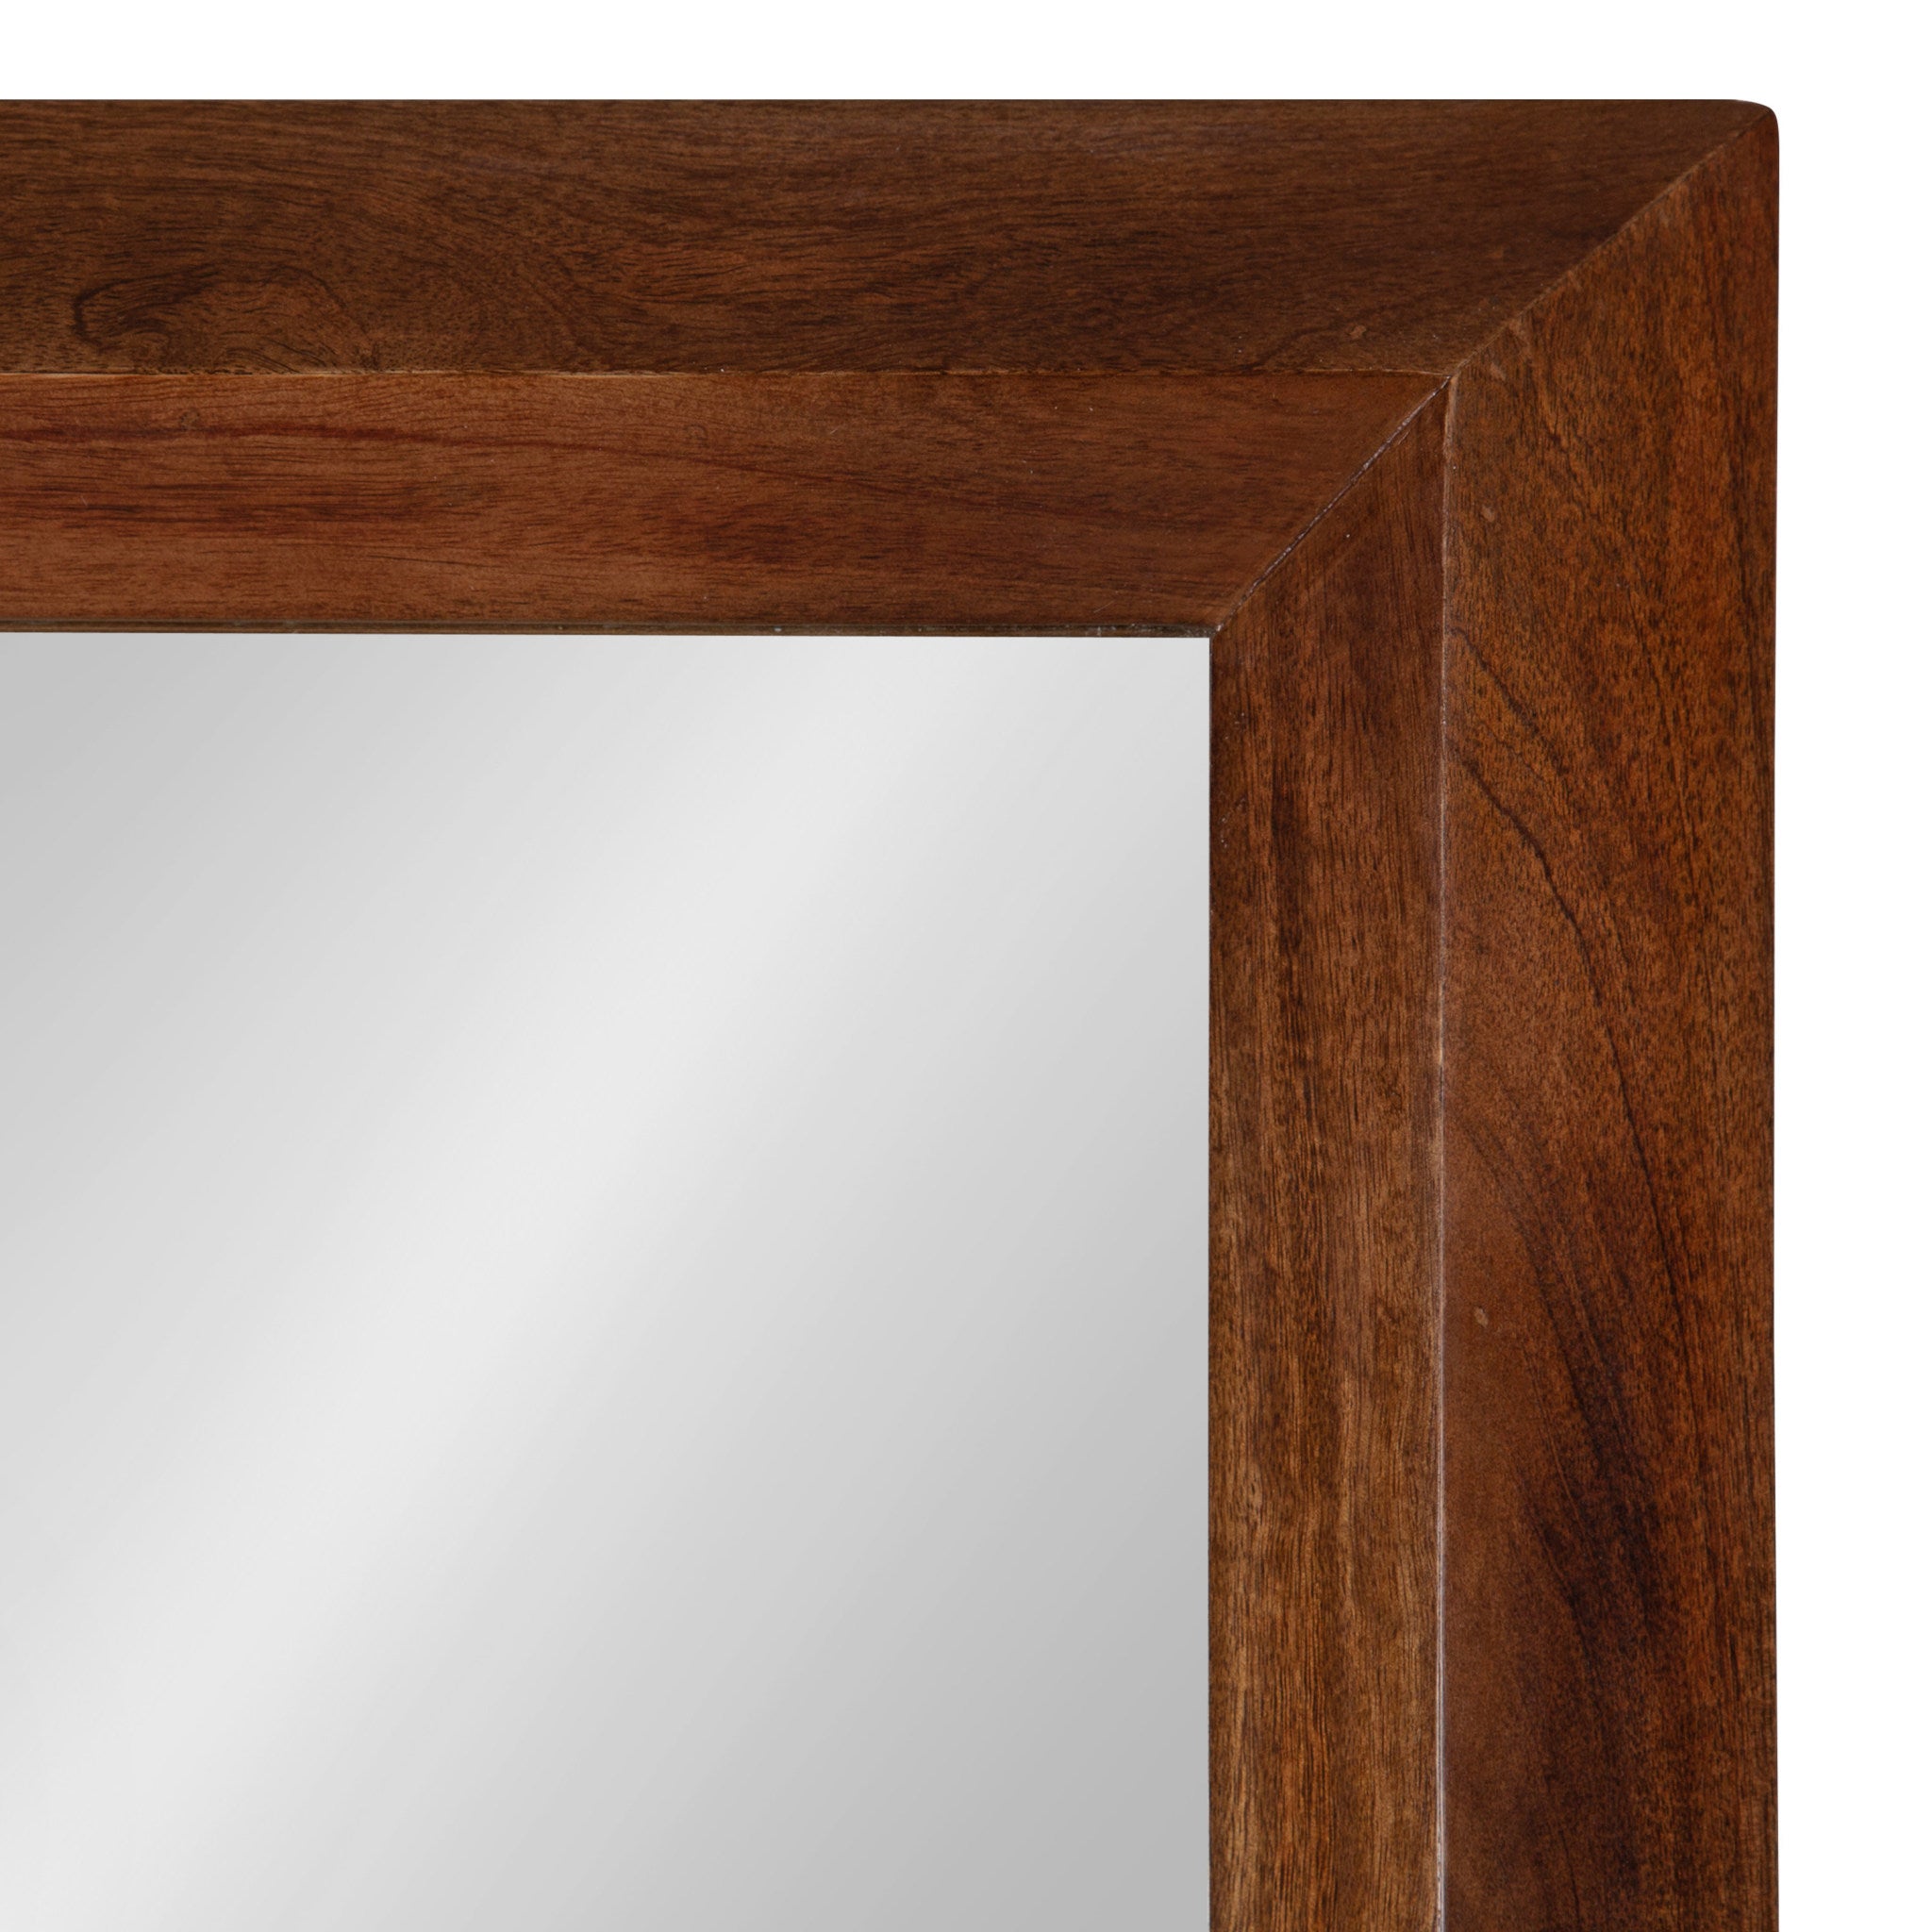 Quaid Wood Framed Wall Mirror